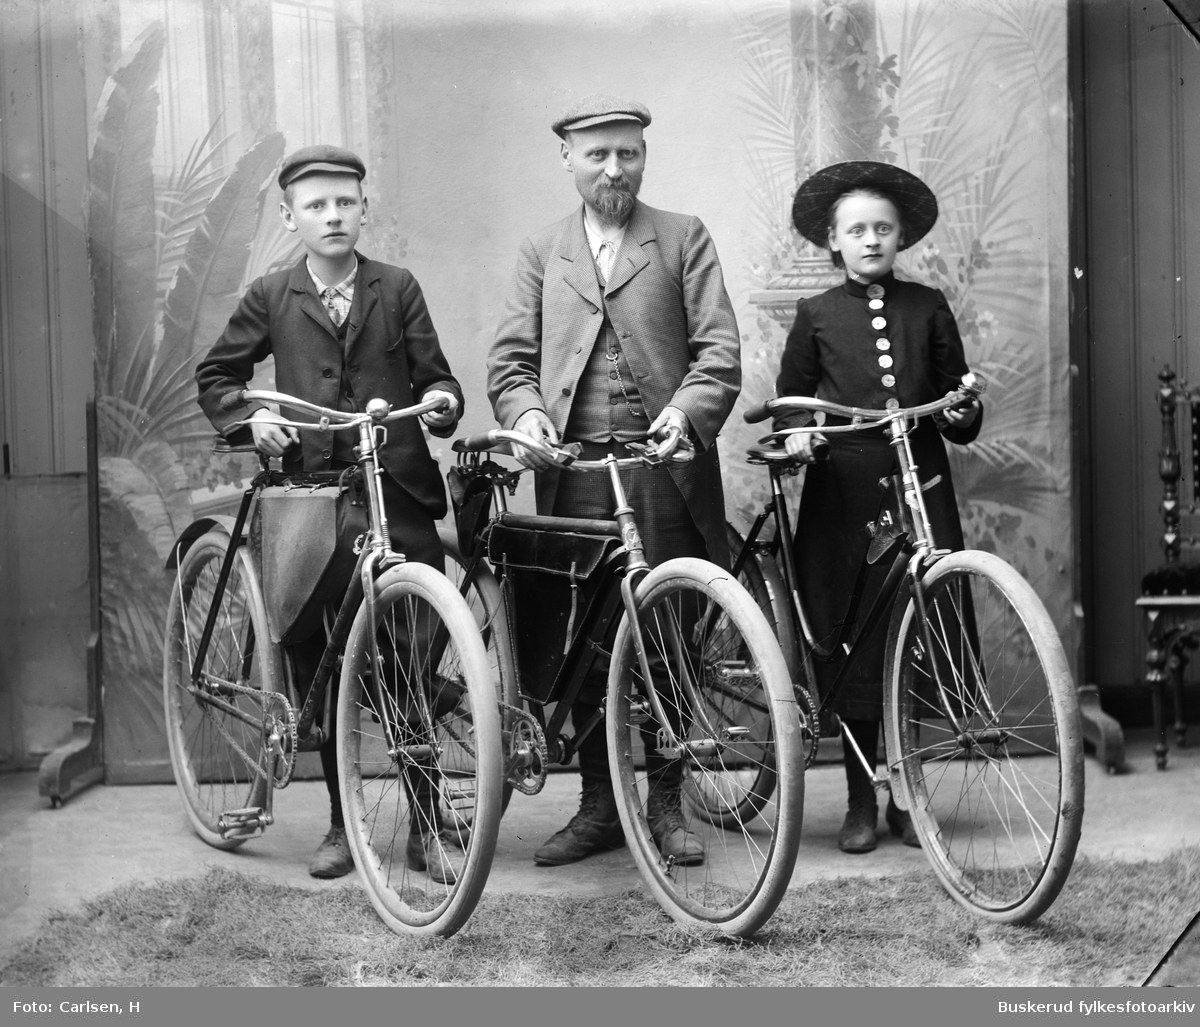 Tre med sykler
Herr Joh. Lorntz fra sentralbogbinderiet i Christiania
Akersgate 75
To barn